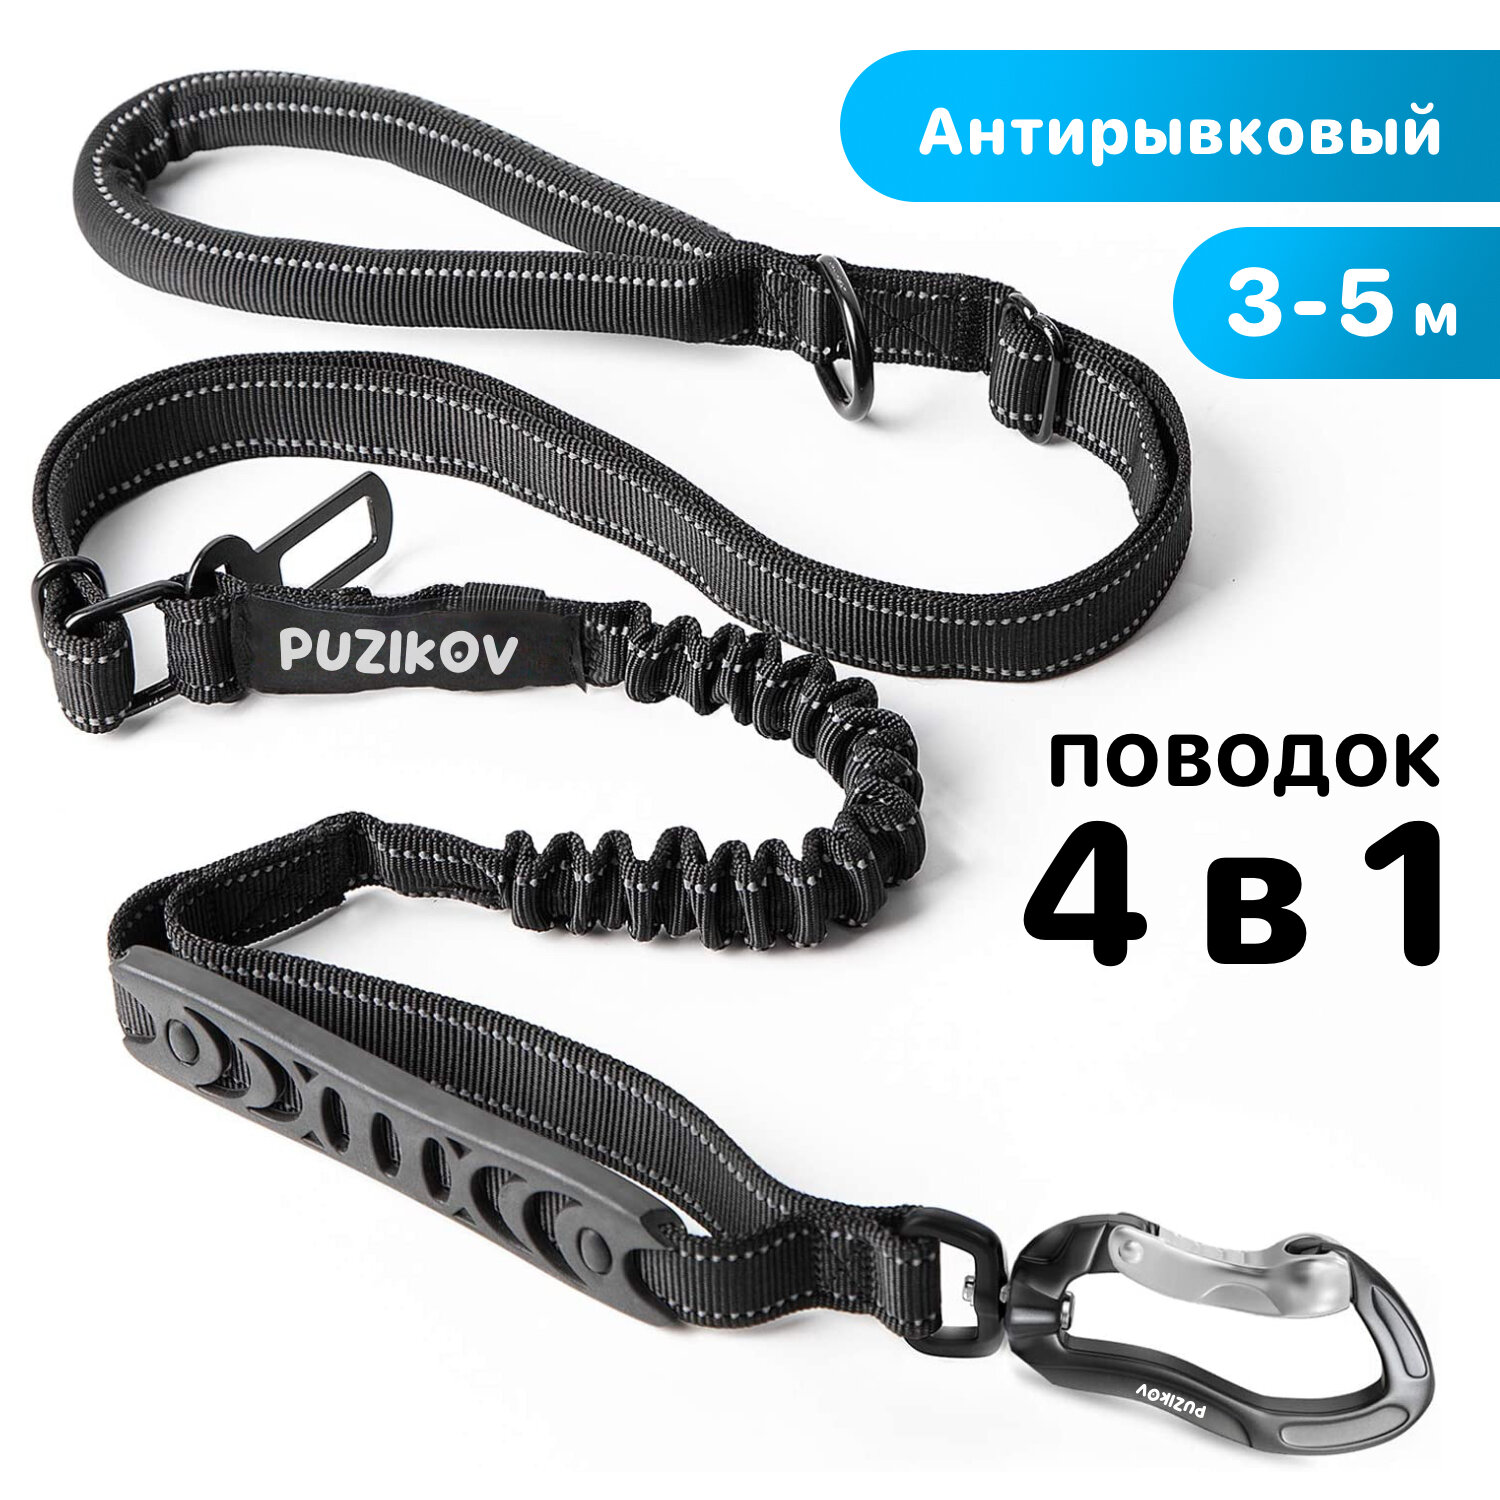 Поводок для собак Антирывковый с усиленным карабином 4 в 1 для средних и крупных пород, 3-5 метров, PUZIKOV / пузиков